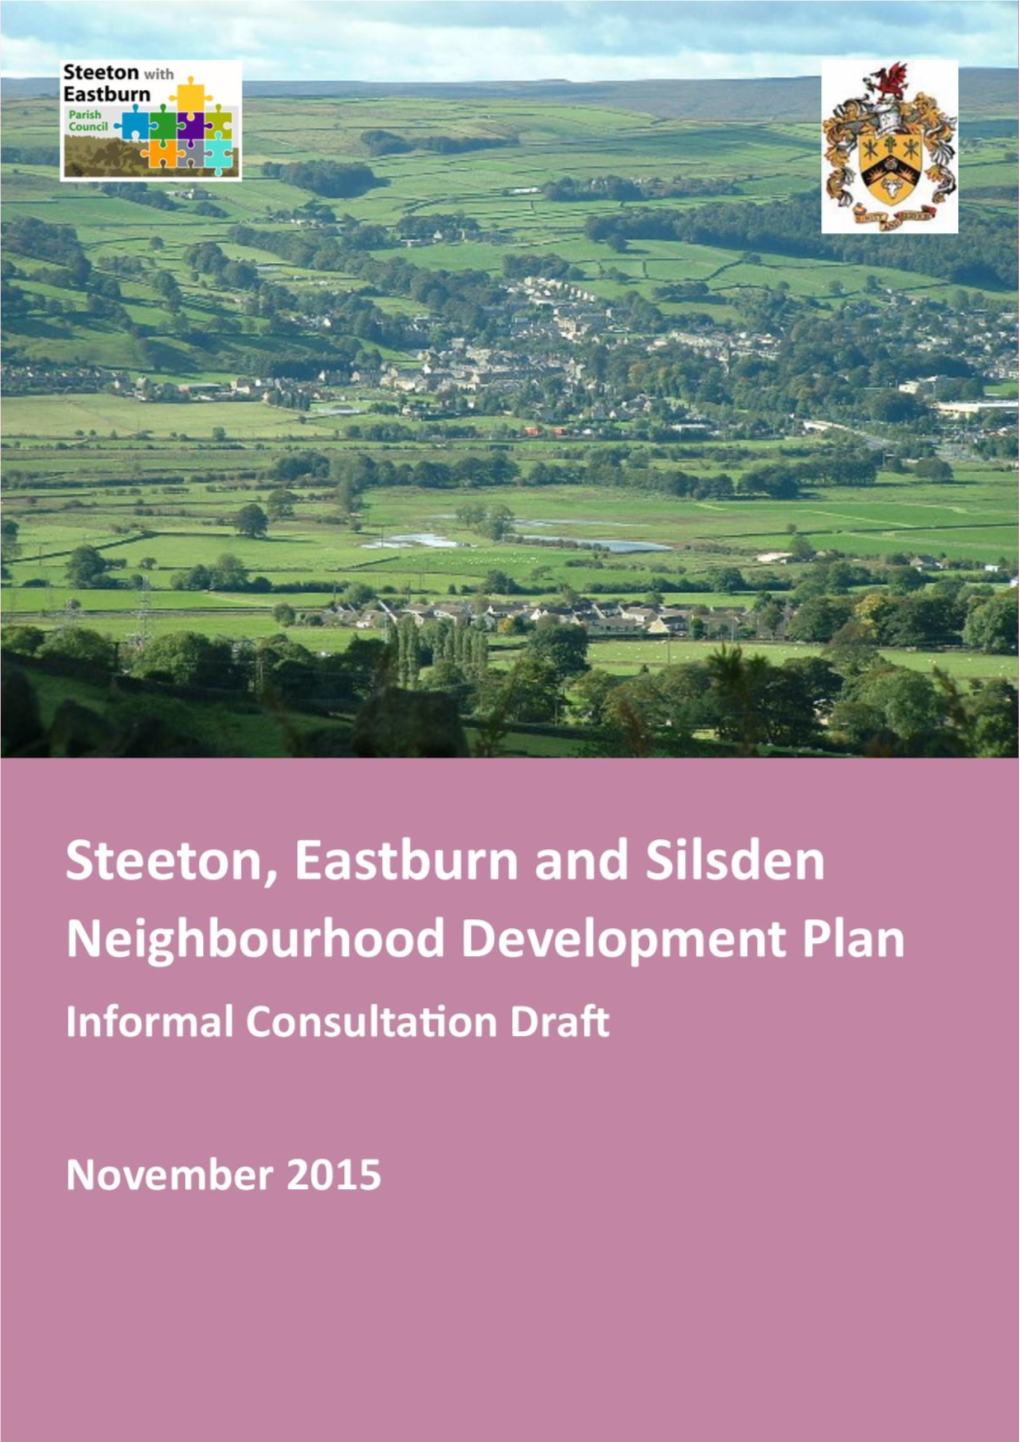 Steeton, Eastburn and Silsden Neighbourhood Plan, Informal Consultation Draft, November 2015